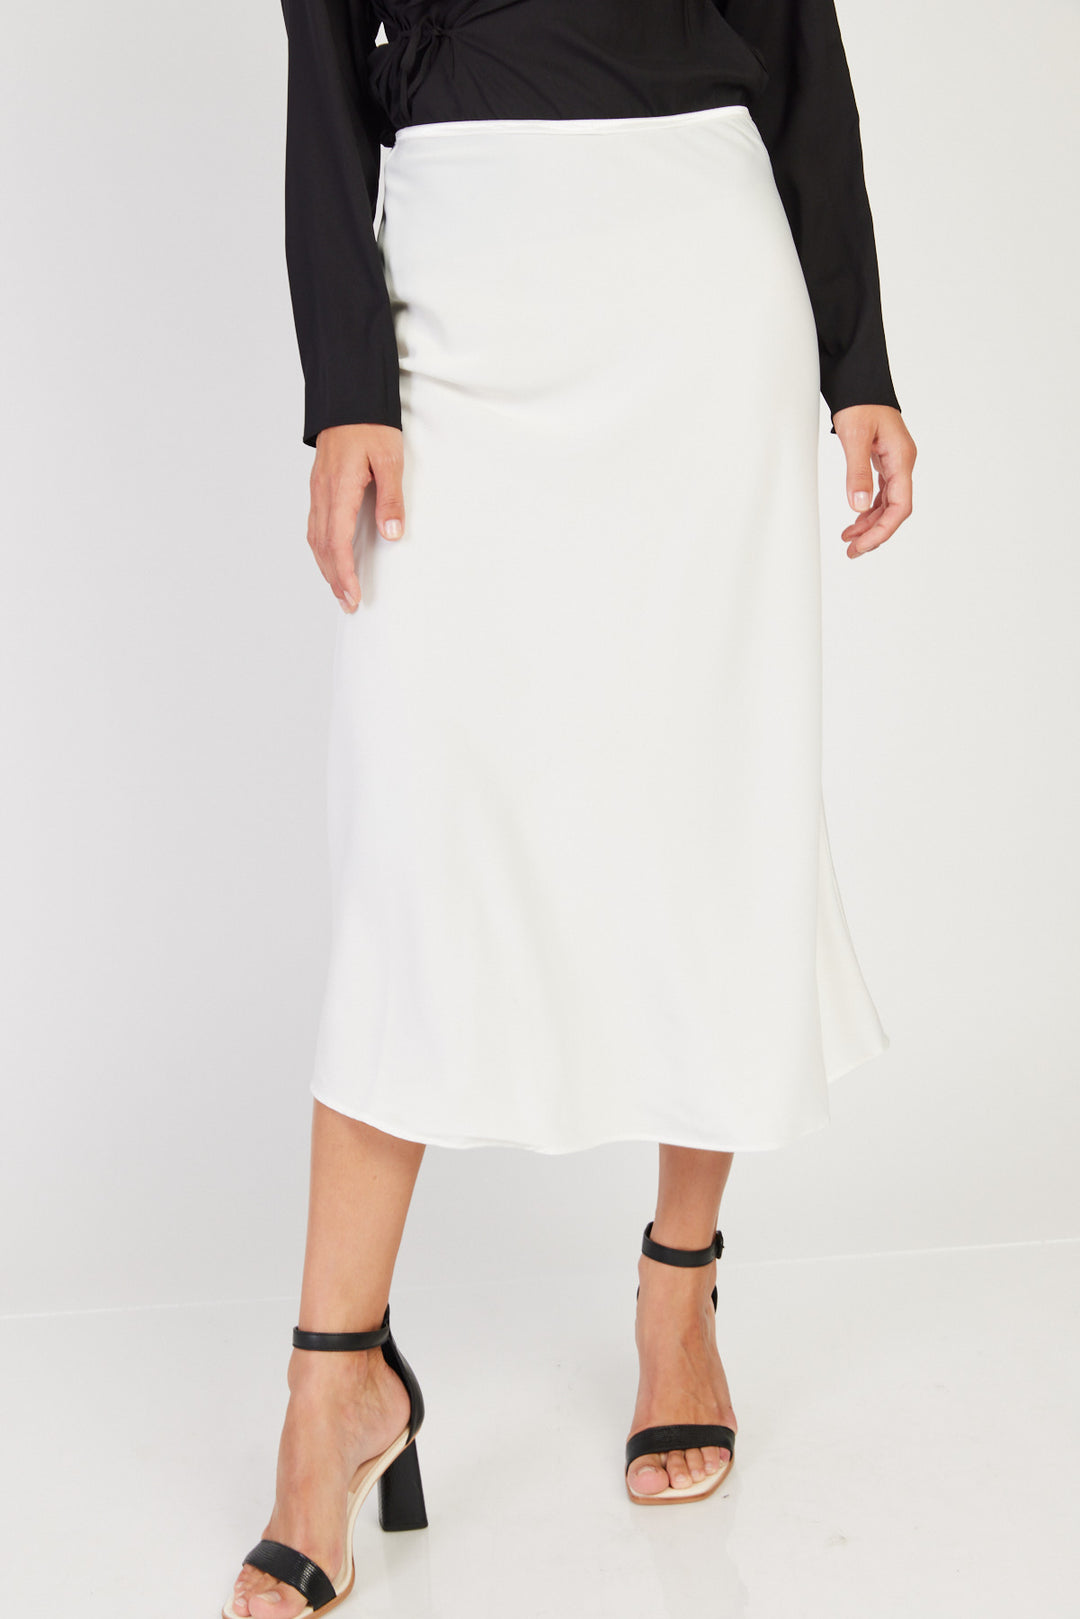 חצאית Blank בצבע לבן